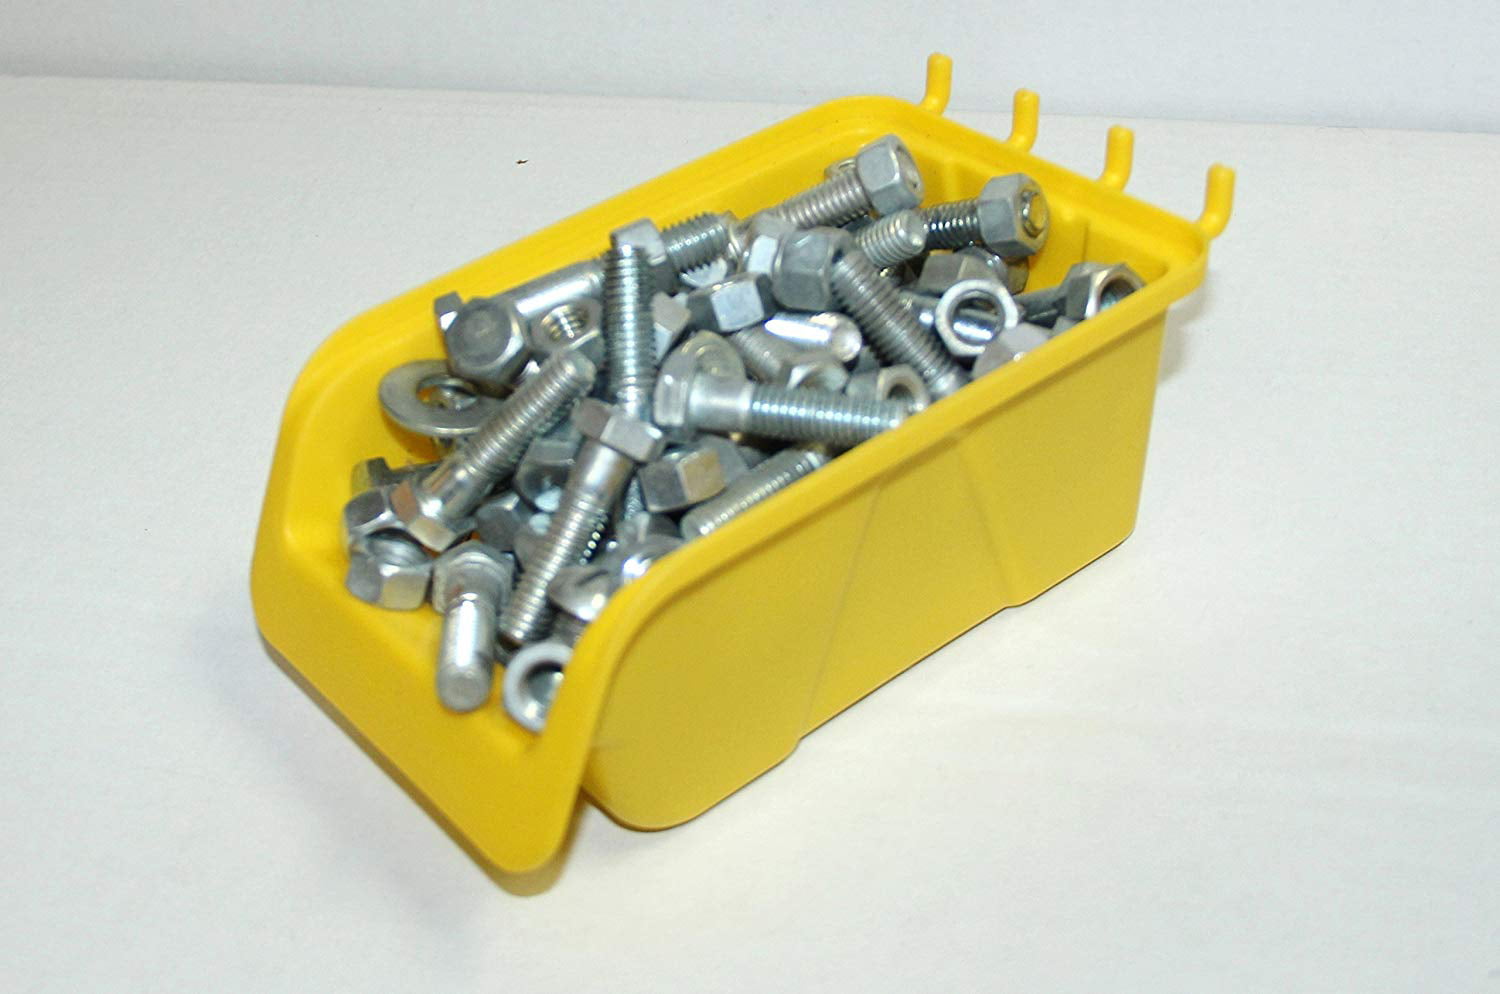 8 Pcs Pegboard Bin Kit Parts Storage Craft Organizer Tool Workbench Accessories 